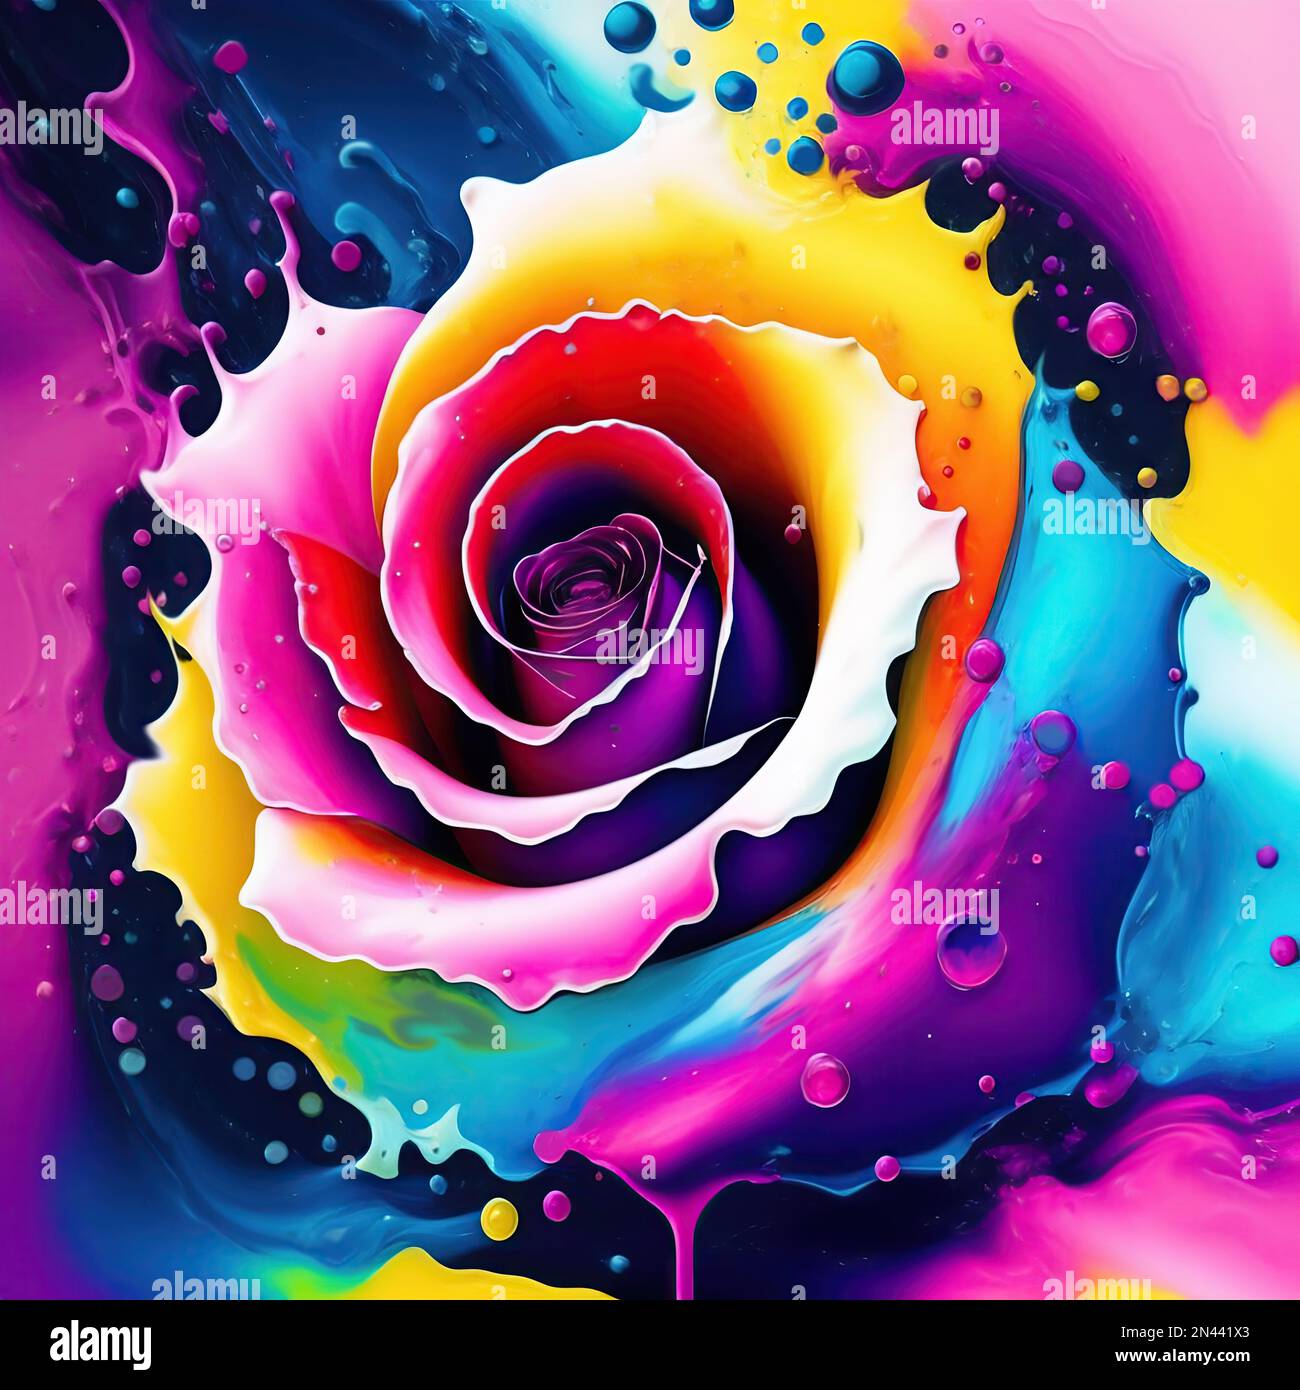 Illustration einer wunderschönen Rosenblume im abstrakten Spritzwasser-Stil Stockfoto